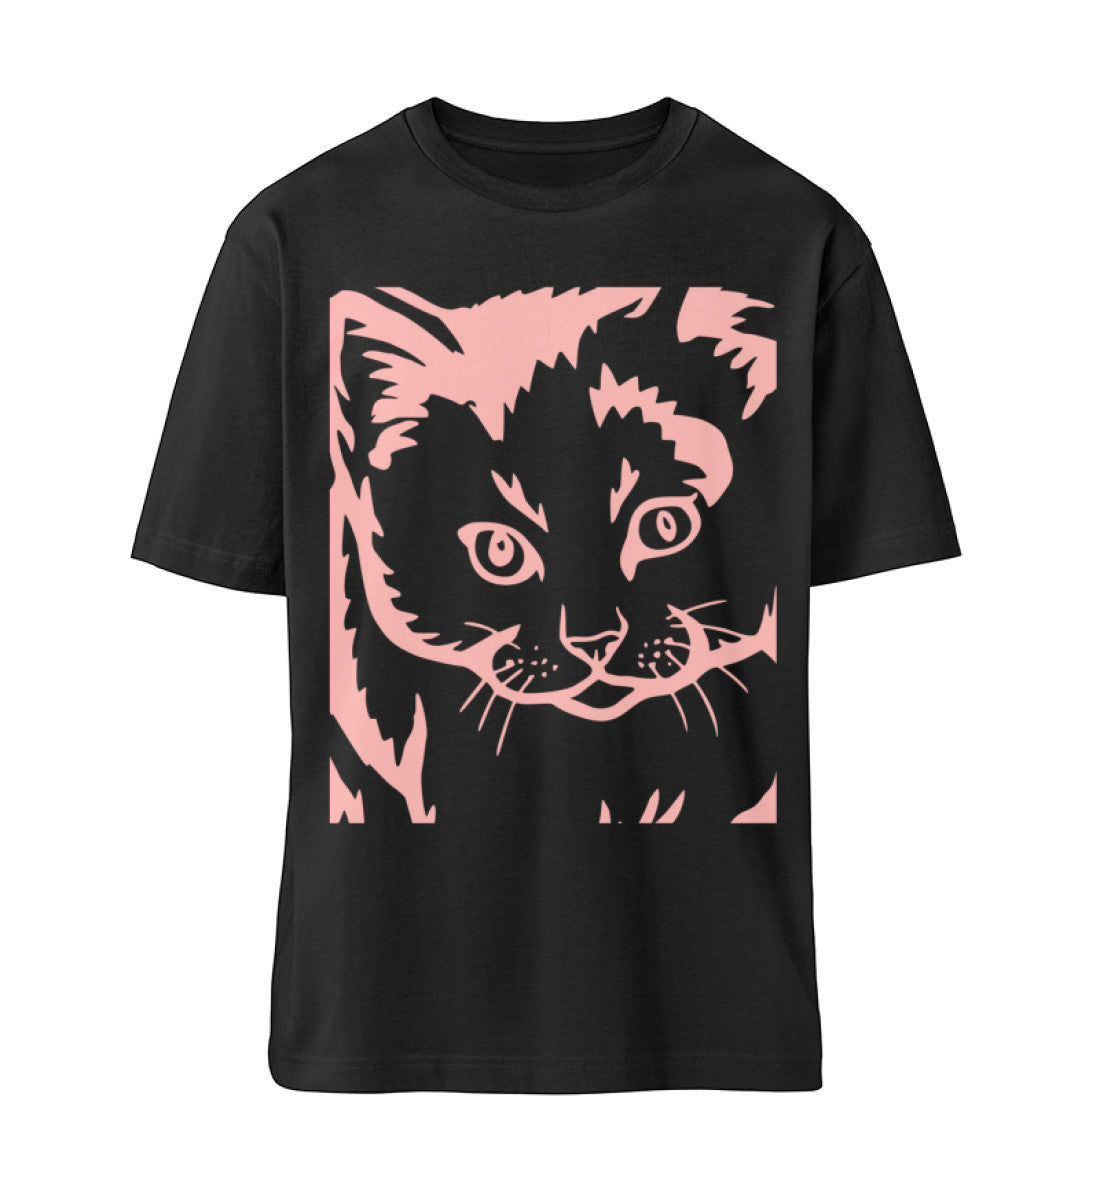 Schwarzes T-Shirt Unisex Relaxed Fit für Frauen und Männer bedruckt mit dem Design der Roger Rockawoo Clothing Kollektion we are not alone Katze